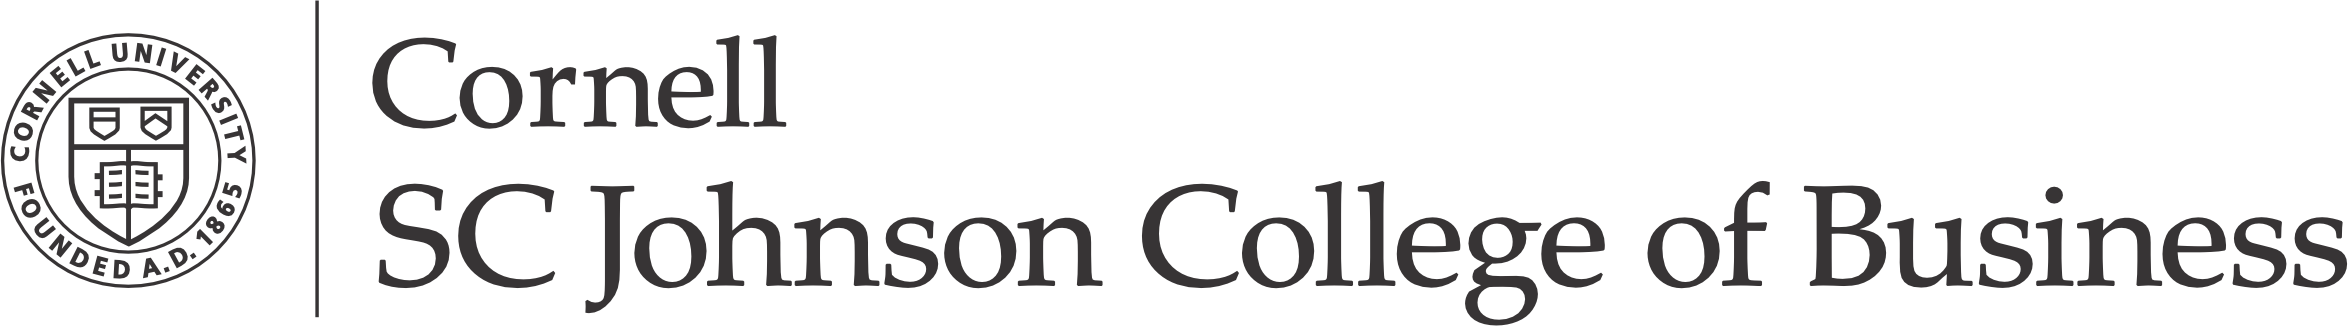 Cornell-SC College